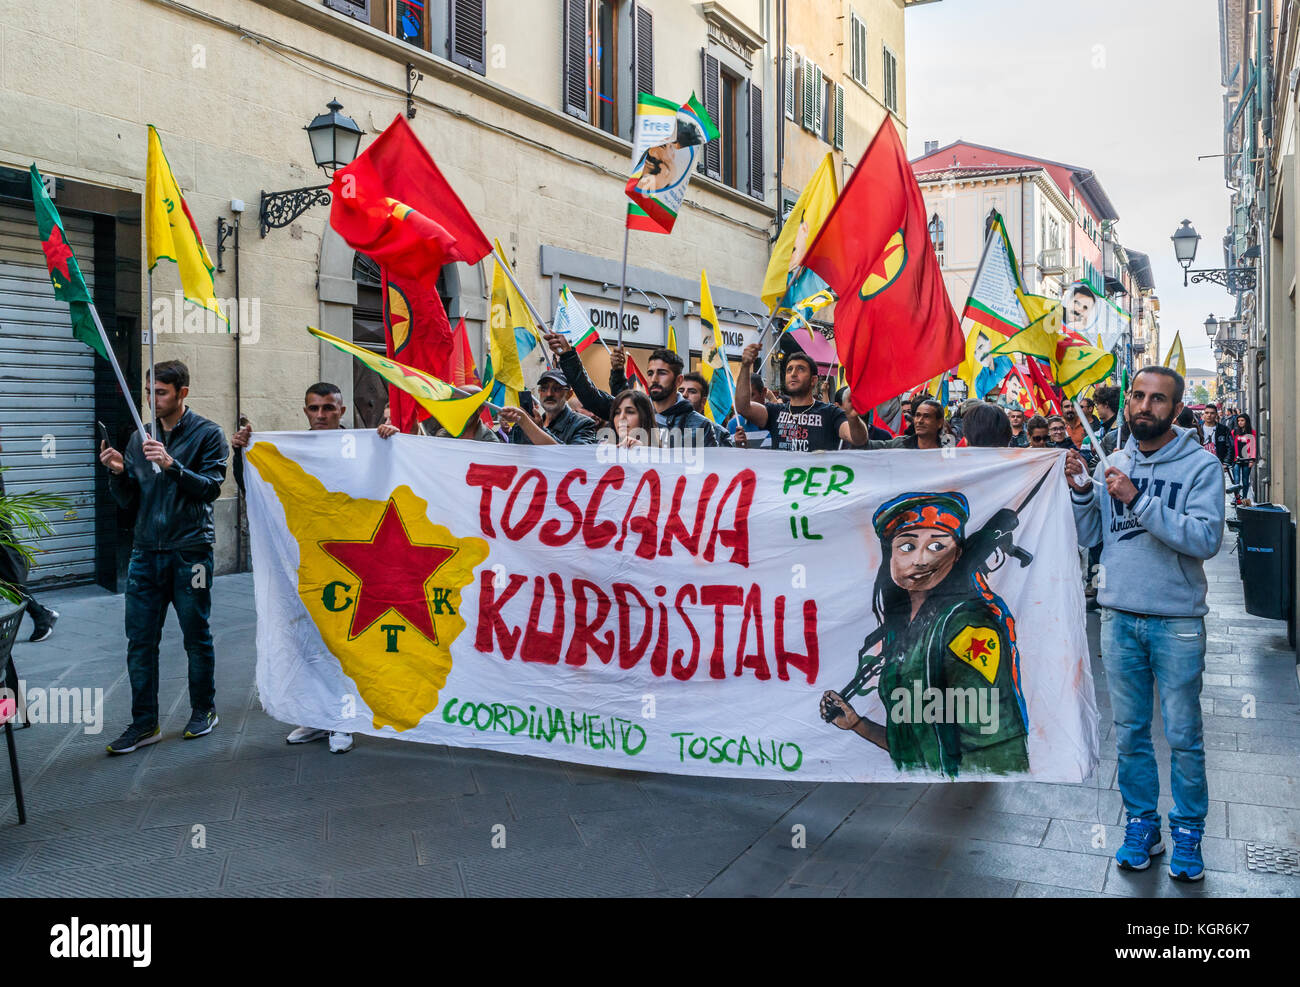 Toscana per il Kurdistan protesta a pisa di lotta per l indipendenza del Kurdistan in seguito al crollo di uno Stato islamico Foto Stock